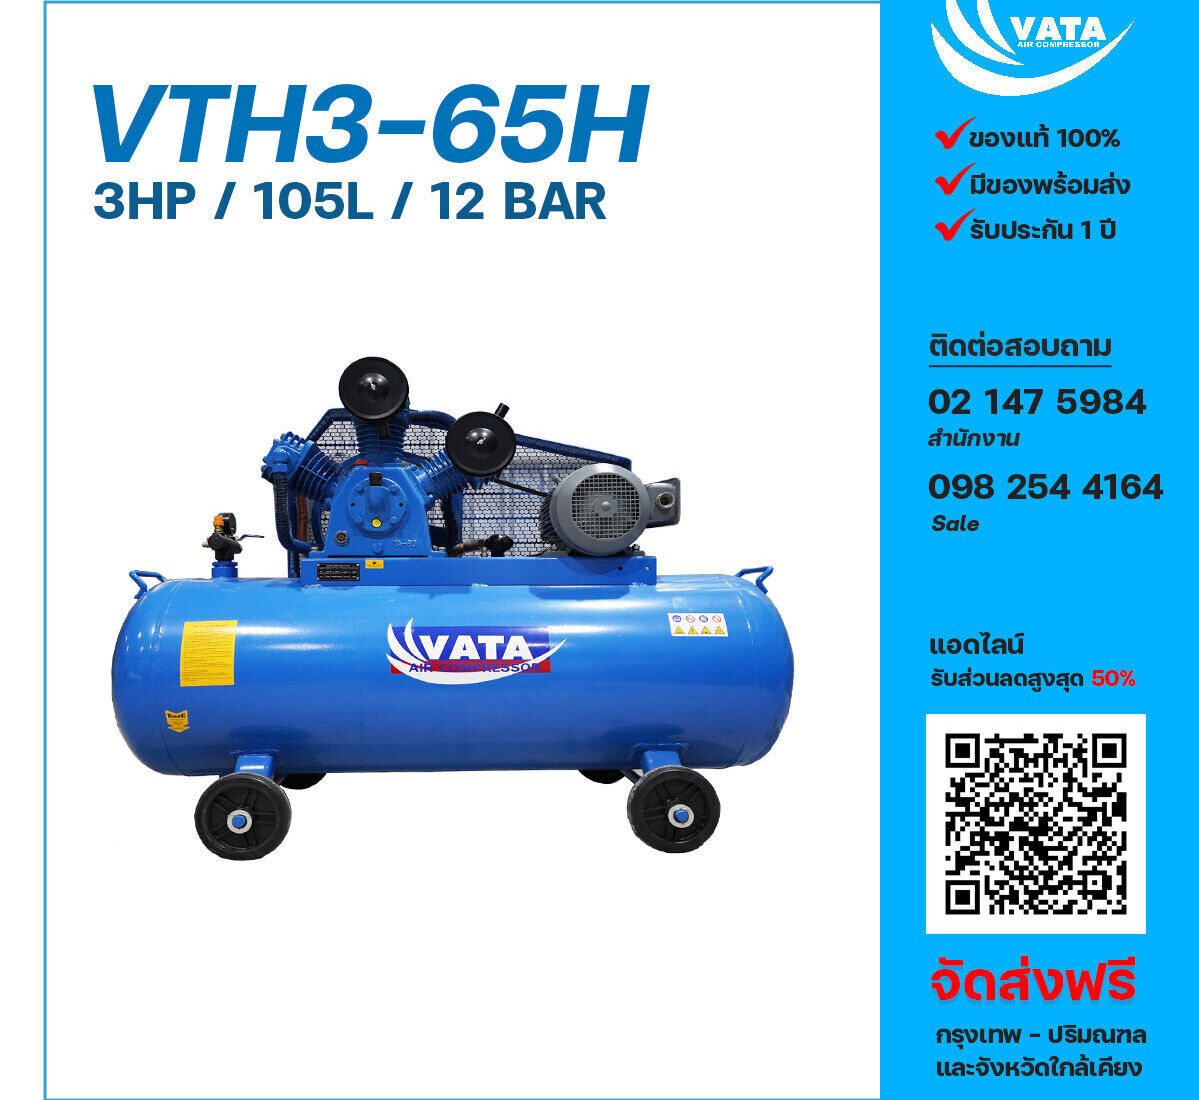 ปั๊มลมวาตะแรงดันสูง VATA Two-Stage VTH3-65H 220V ปั๊มลมลูกสูบ ขนาด 3 สูบ 3 แรงม้า 105 ลิตร VATA พร้อมมอเตอร์ ไฟ 220V ส่งฟรี กรุงเทพฯ-ปริมณฑล รับประกัน 1 ปี